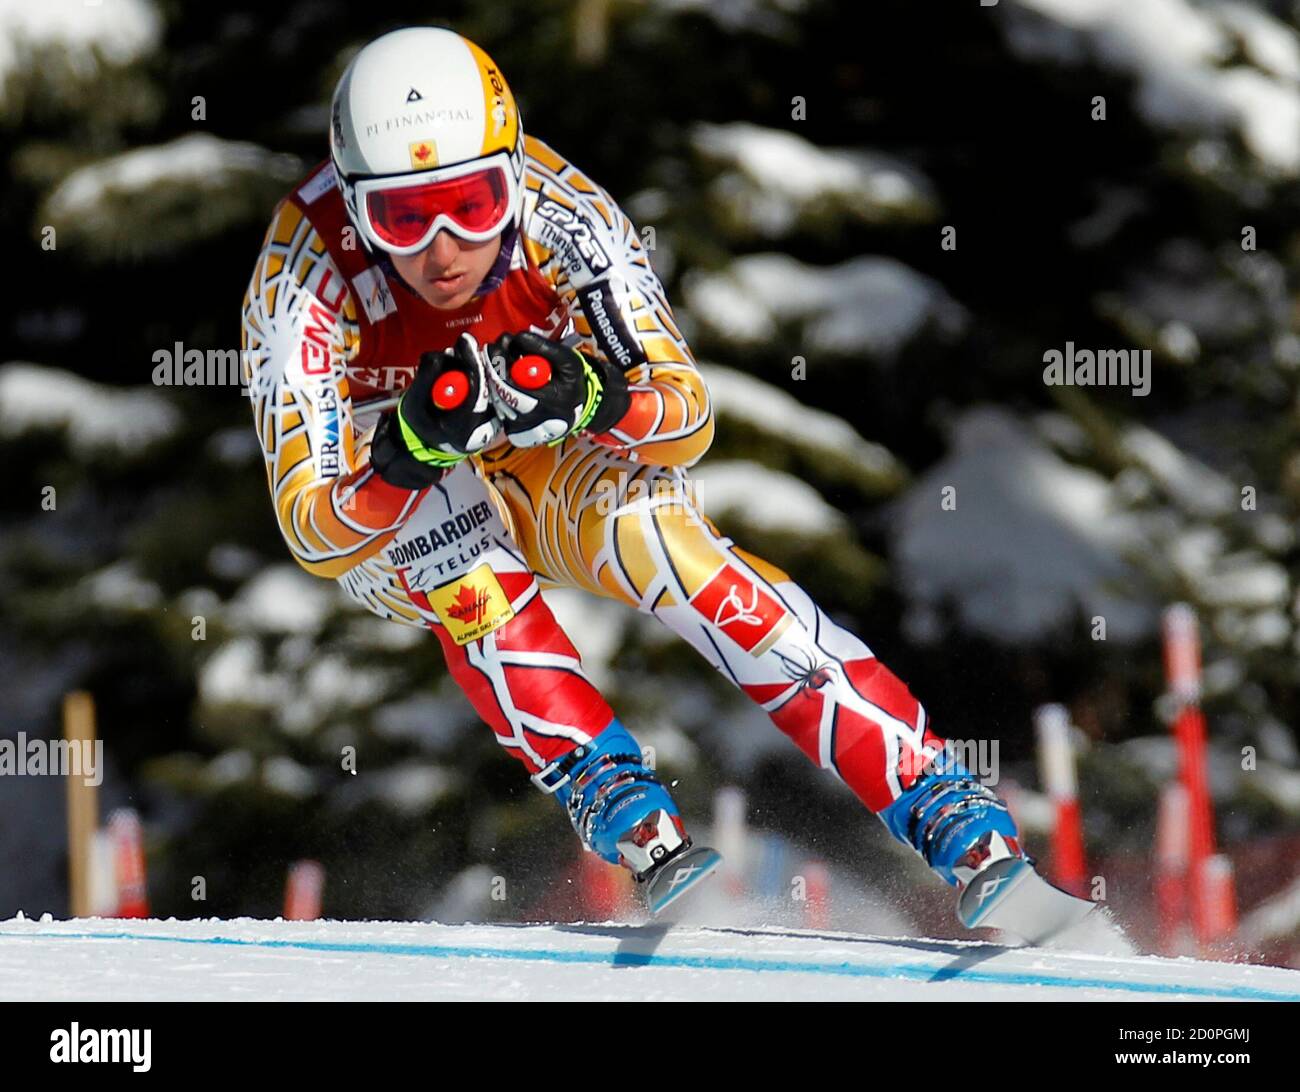 Britt Janyk Kanadas macht eine Drehung während der alpinen Ski-Training an der Frauen Weltcup-Abfahrt in Lake Louise, Alberta 2. Dezember 2010.  REUTERS/Mike Blake (Kanada - Tags: SPORT, Skifahren) Stockfoto